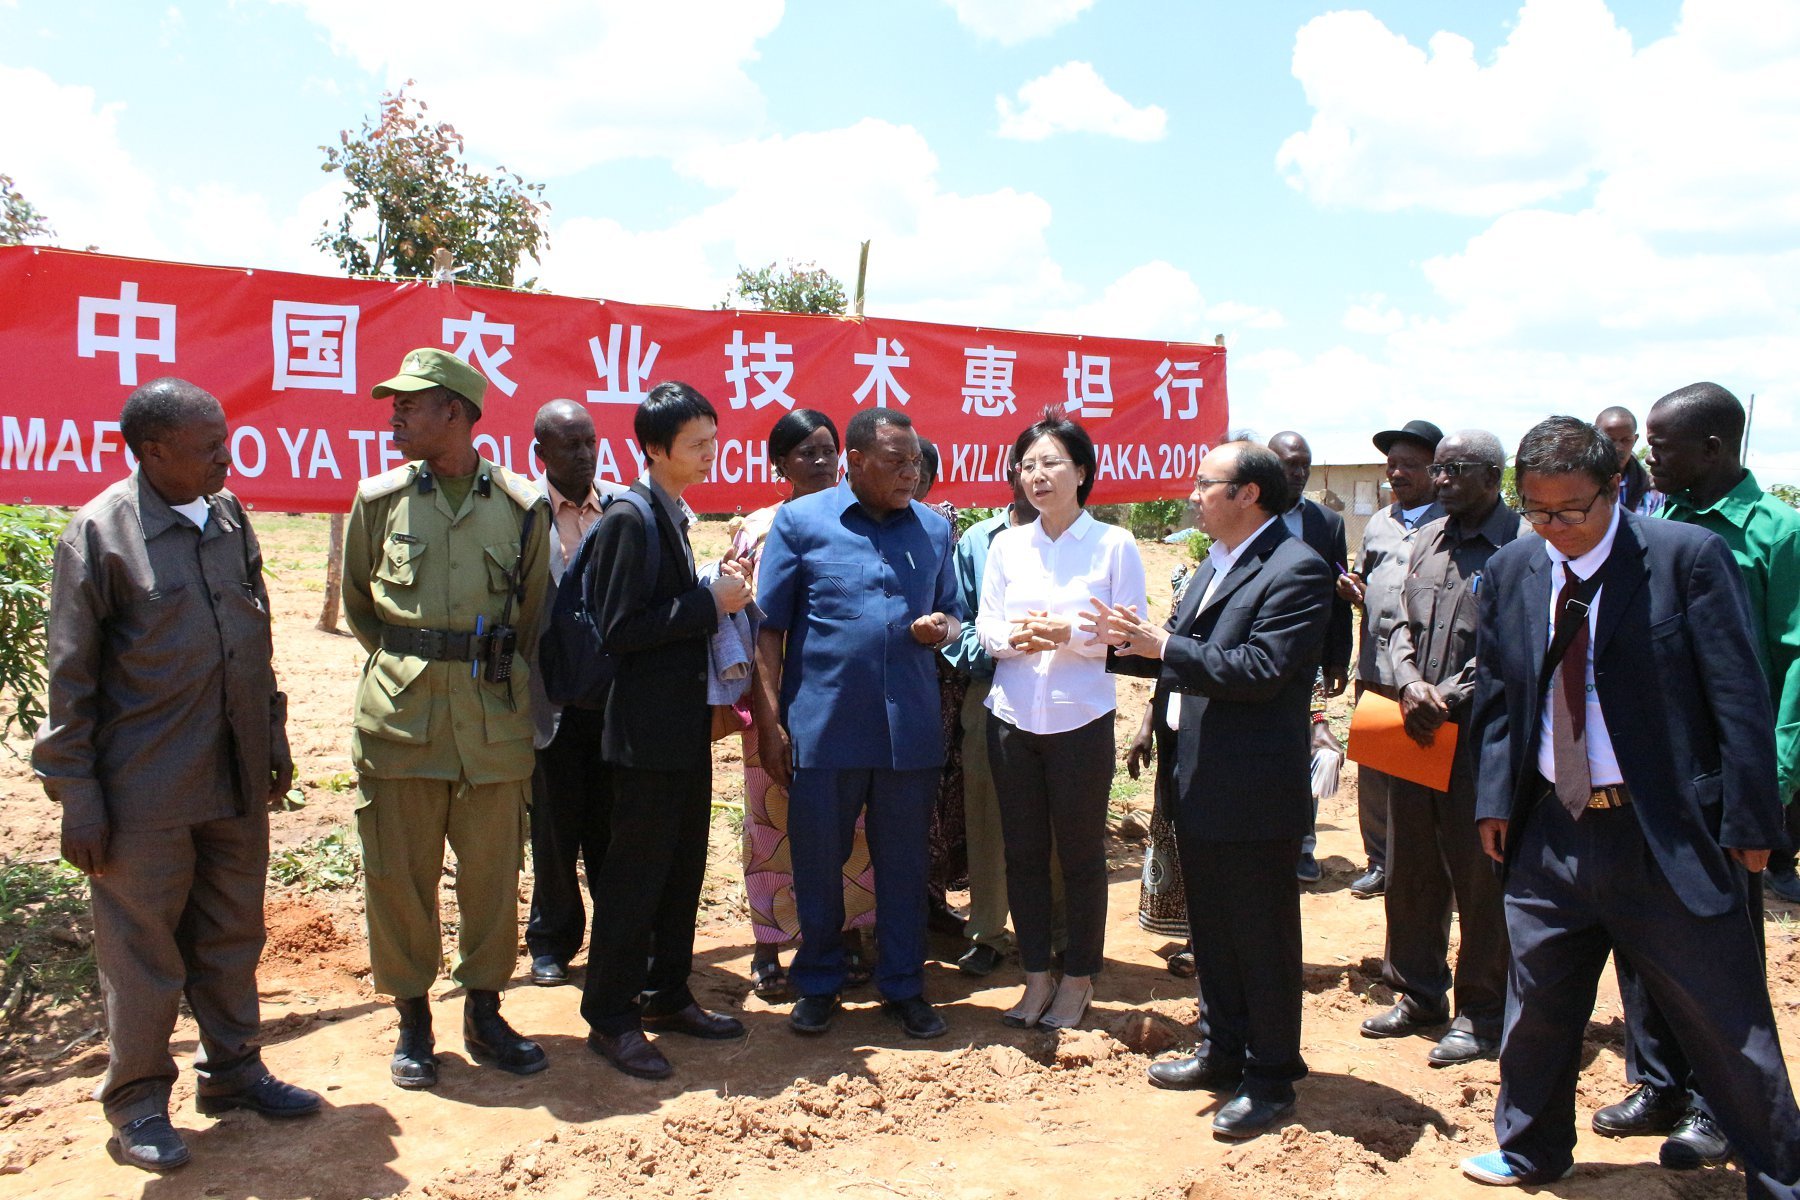 中国援坦桑尼亚农业技术示范中心举办玉米栽培田间实践培训活动